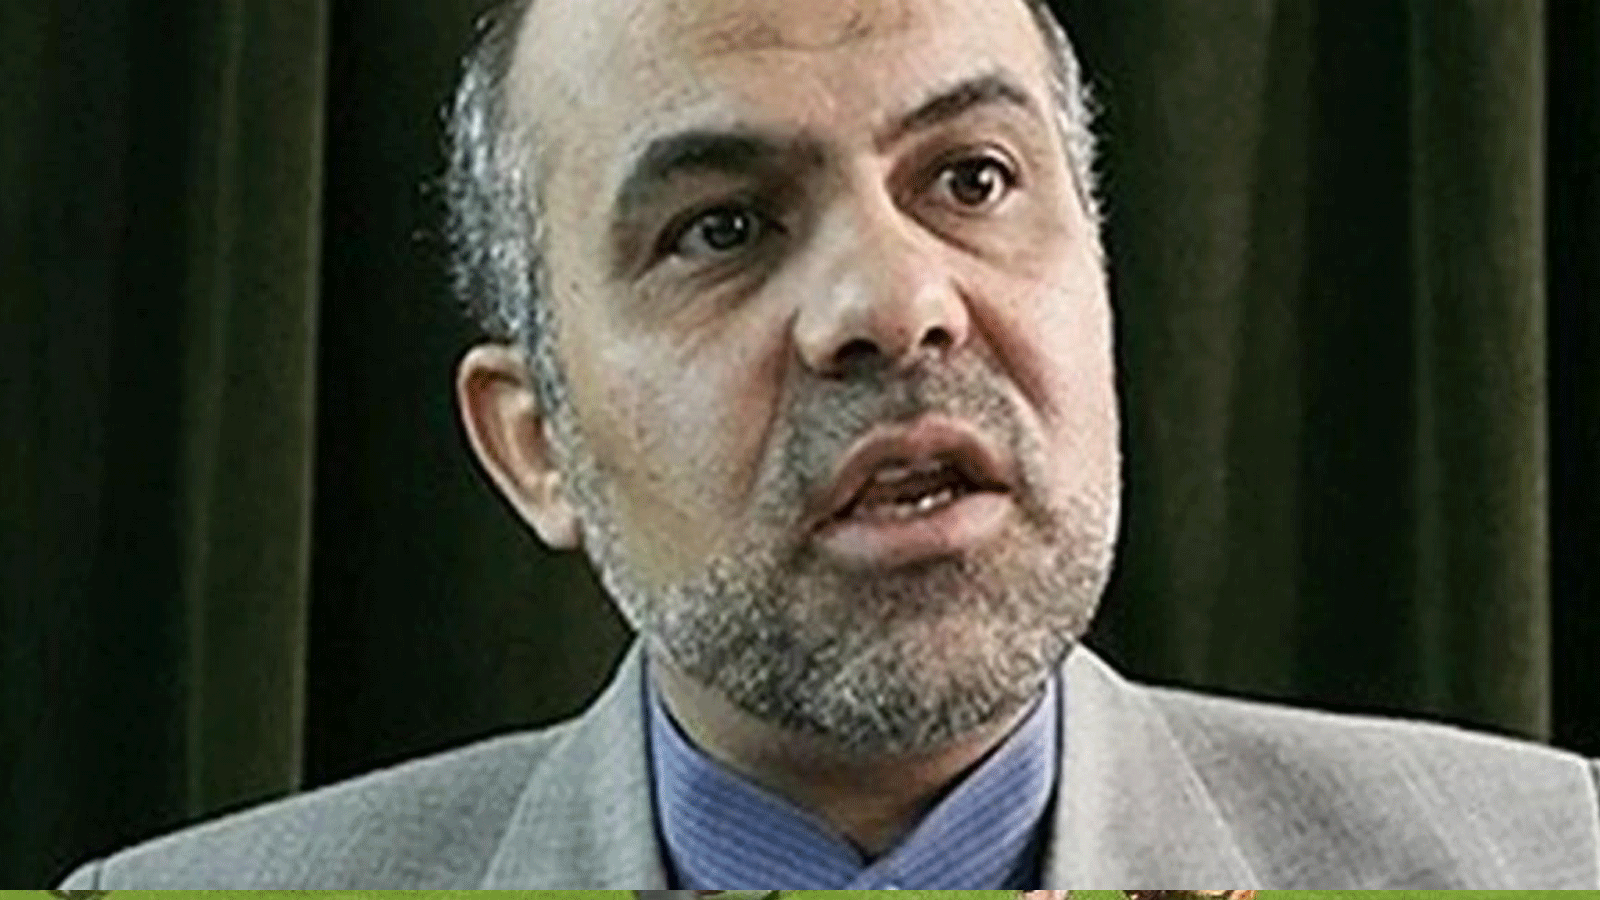 علي رضا أكبري هو مسؤول إيراني سابق وحاصل على جنسية بريطانية